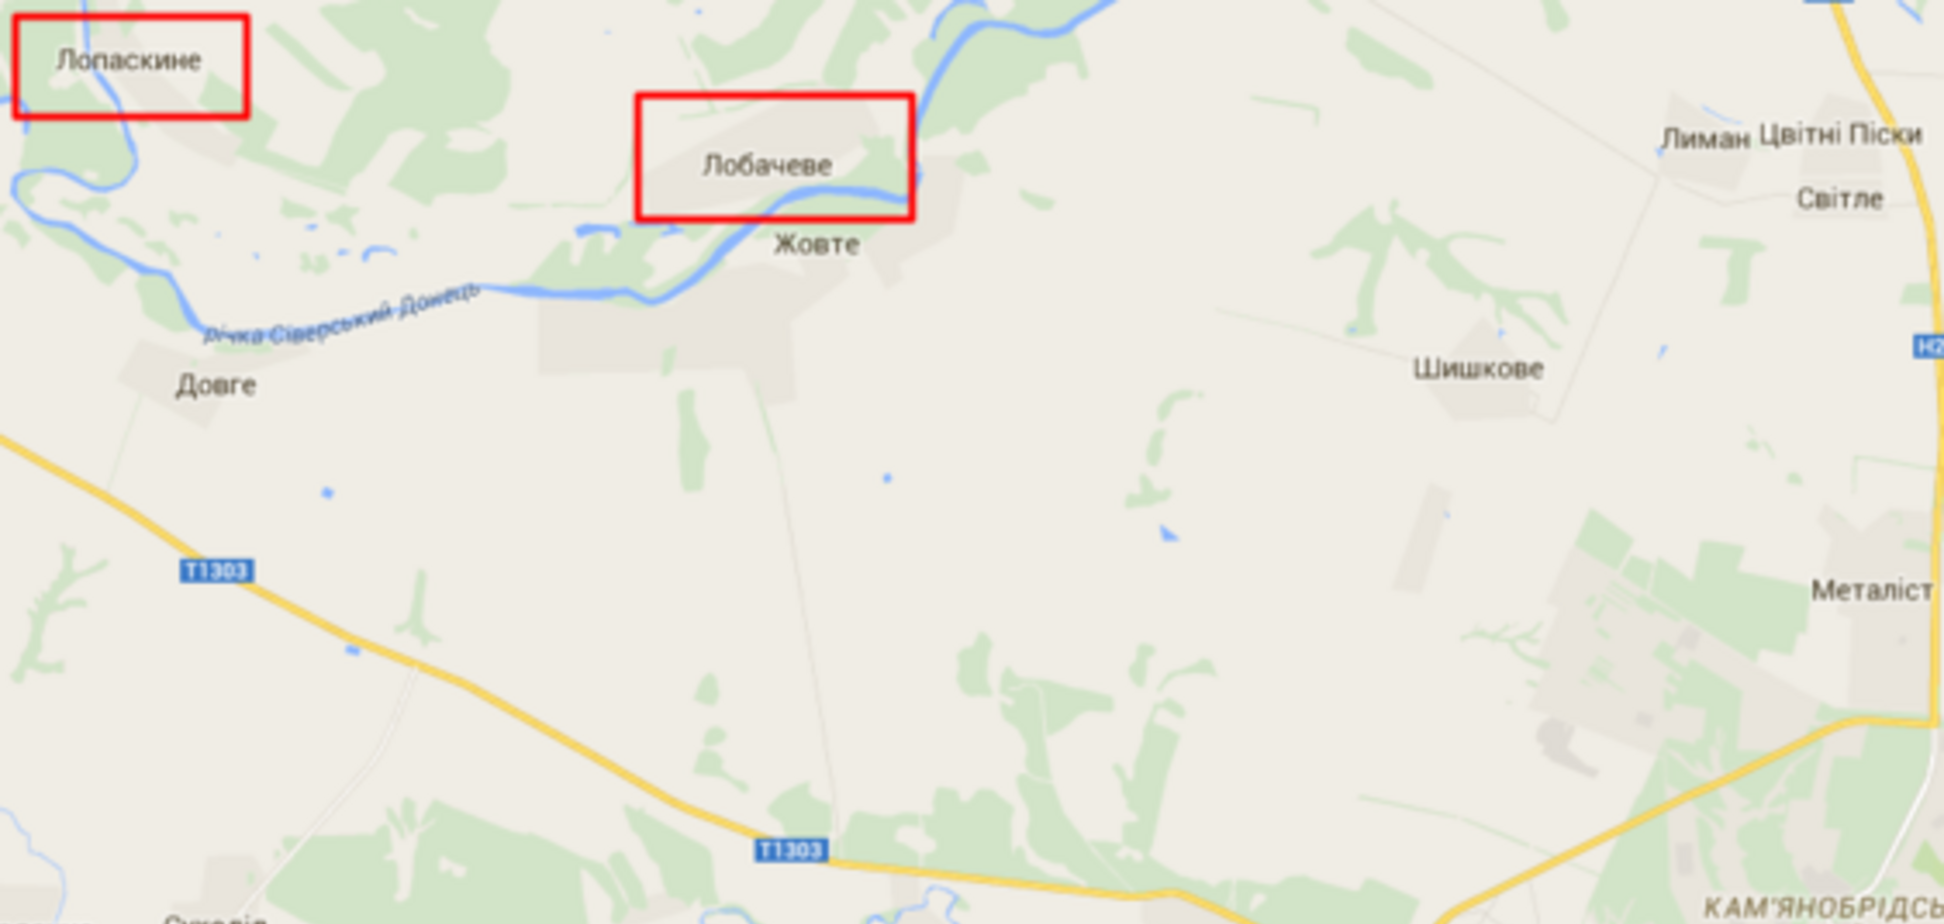 Нацгвардия разбила позицию террористов на Луганщине. Боевики вопят, что 'это была последняя капля'